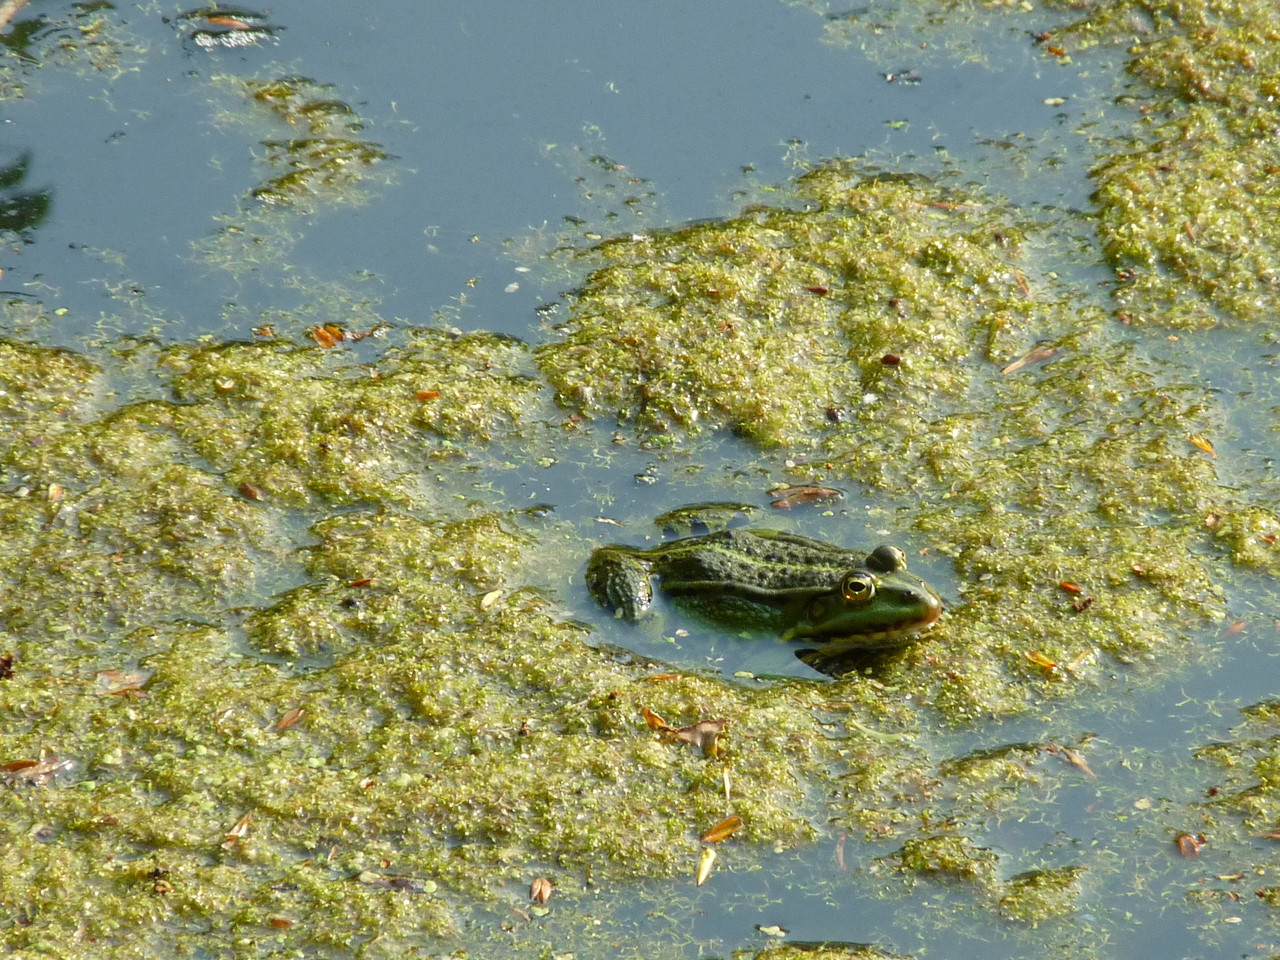 Common water frog Pelophylax esculentus